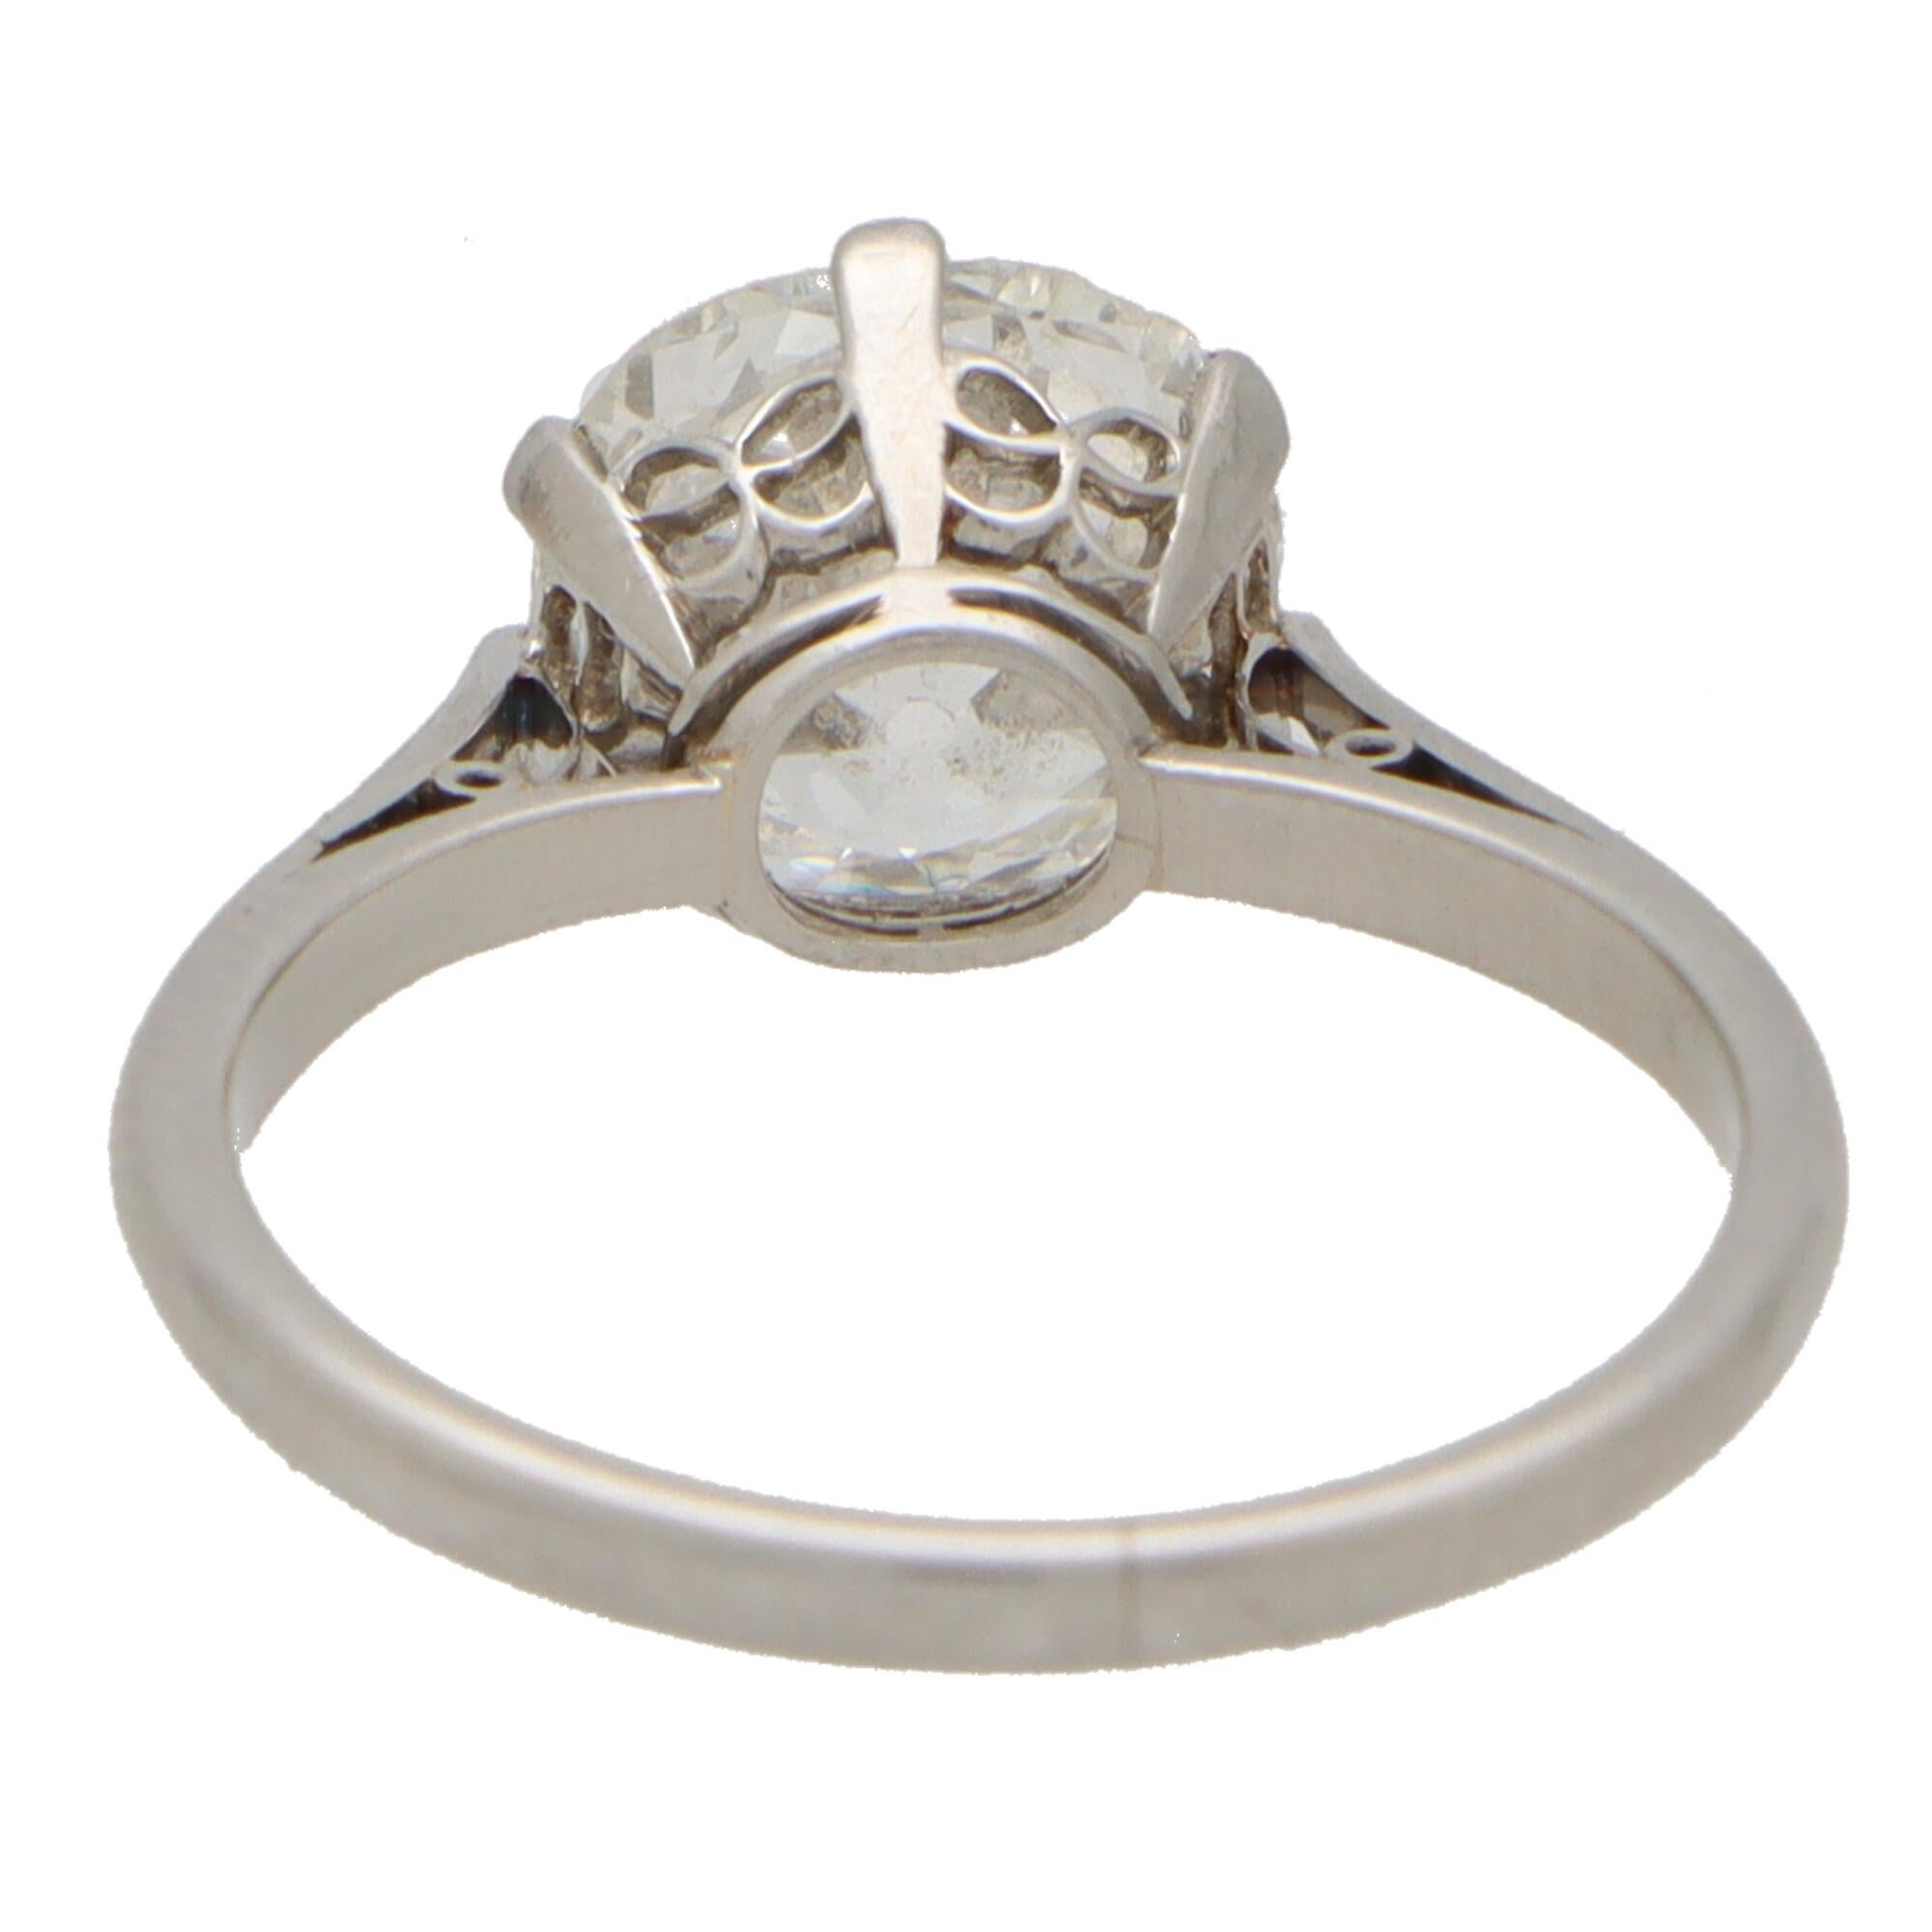 Women's or Men's Antique 1.81 Carat Old Mine Cut Diamond Single Solitaire Ring in Platinum